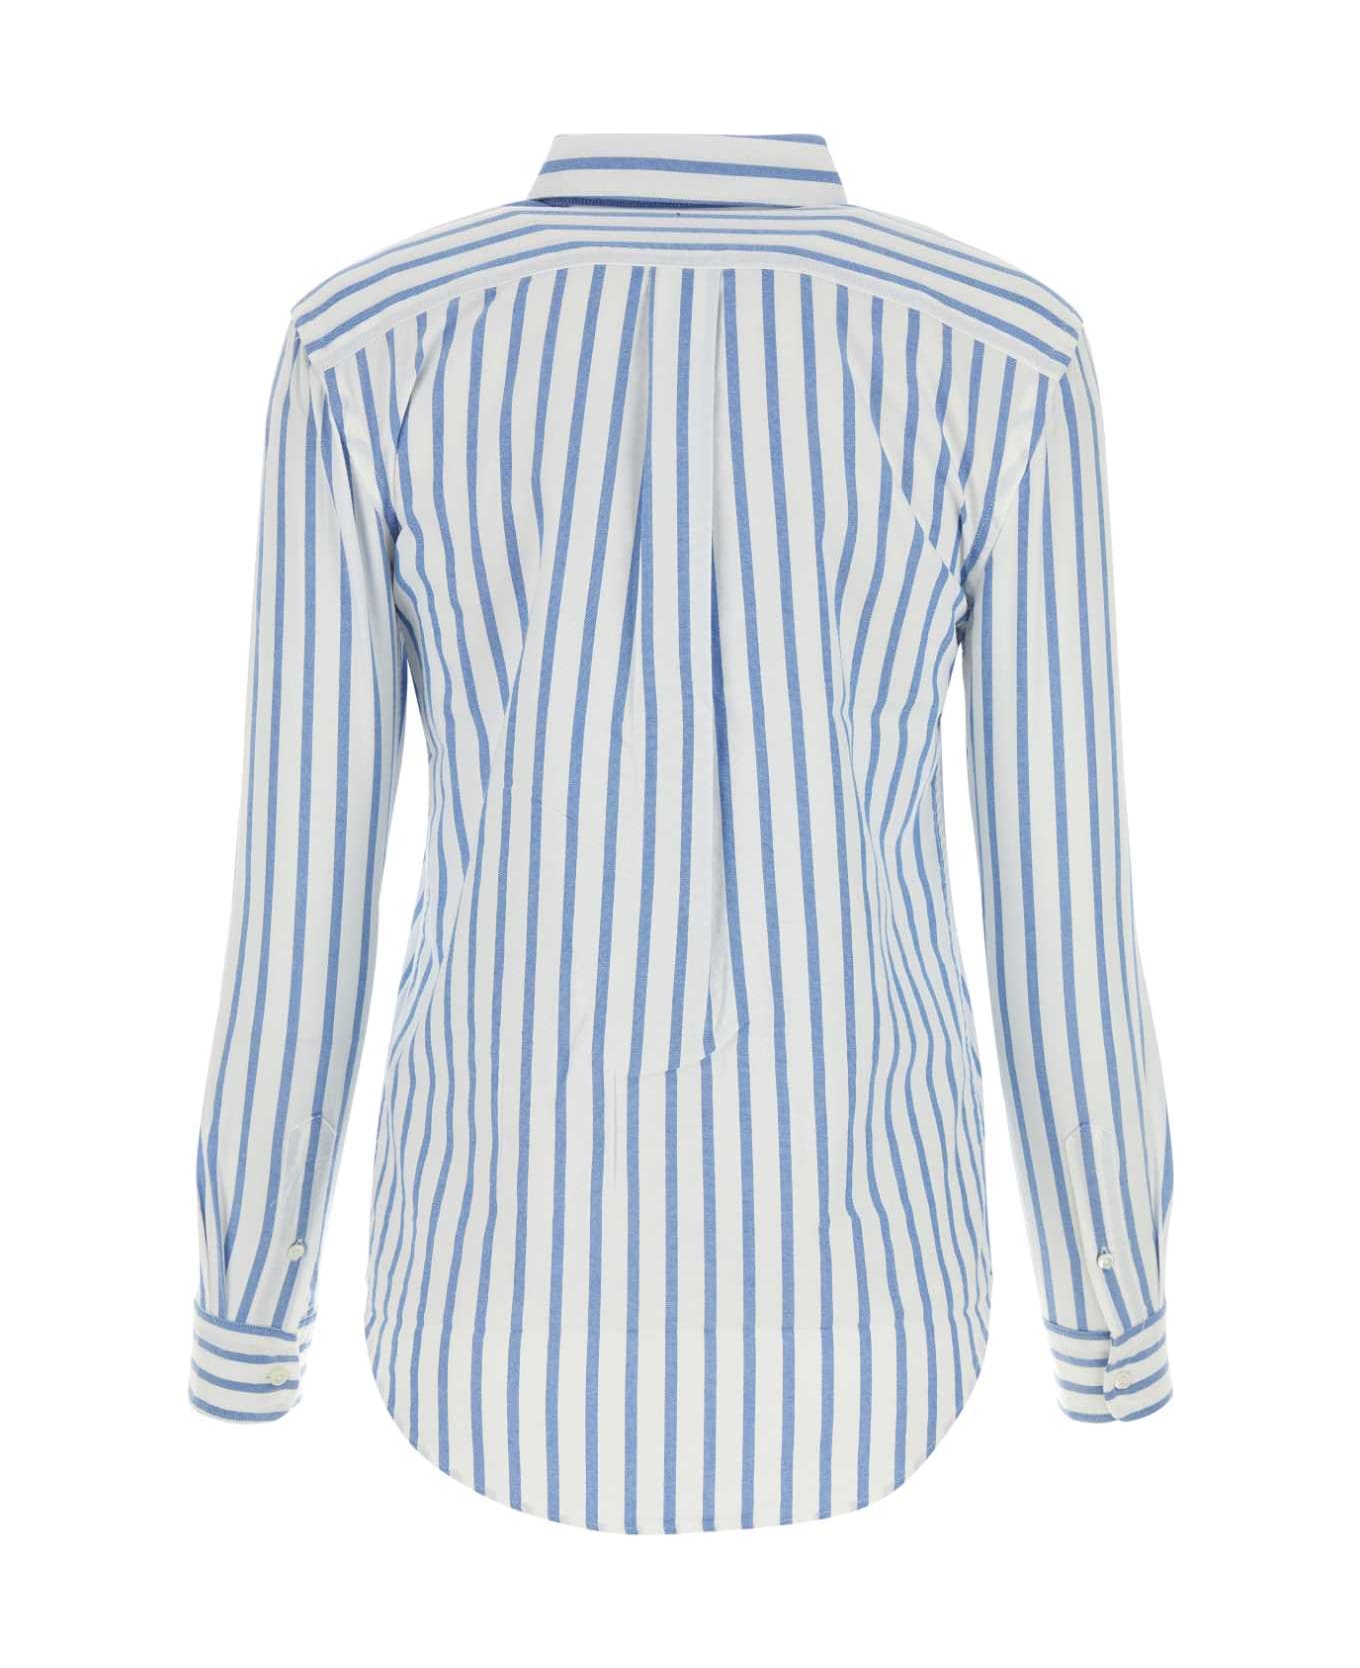 Polo Ralph Lauren Embroidered Oxford Shirt - 1693BWHITELAKEBLUESTRIPE シャツ